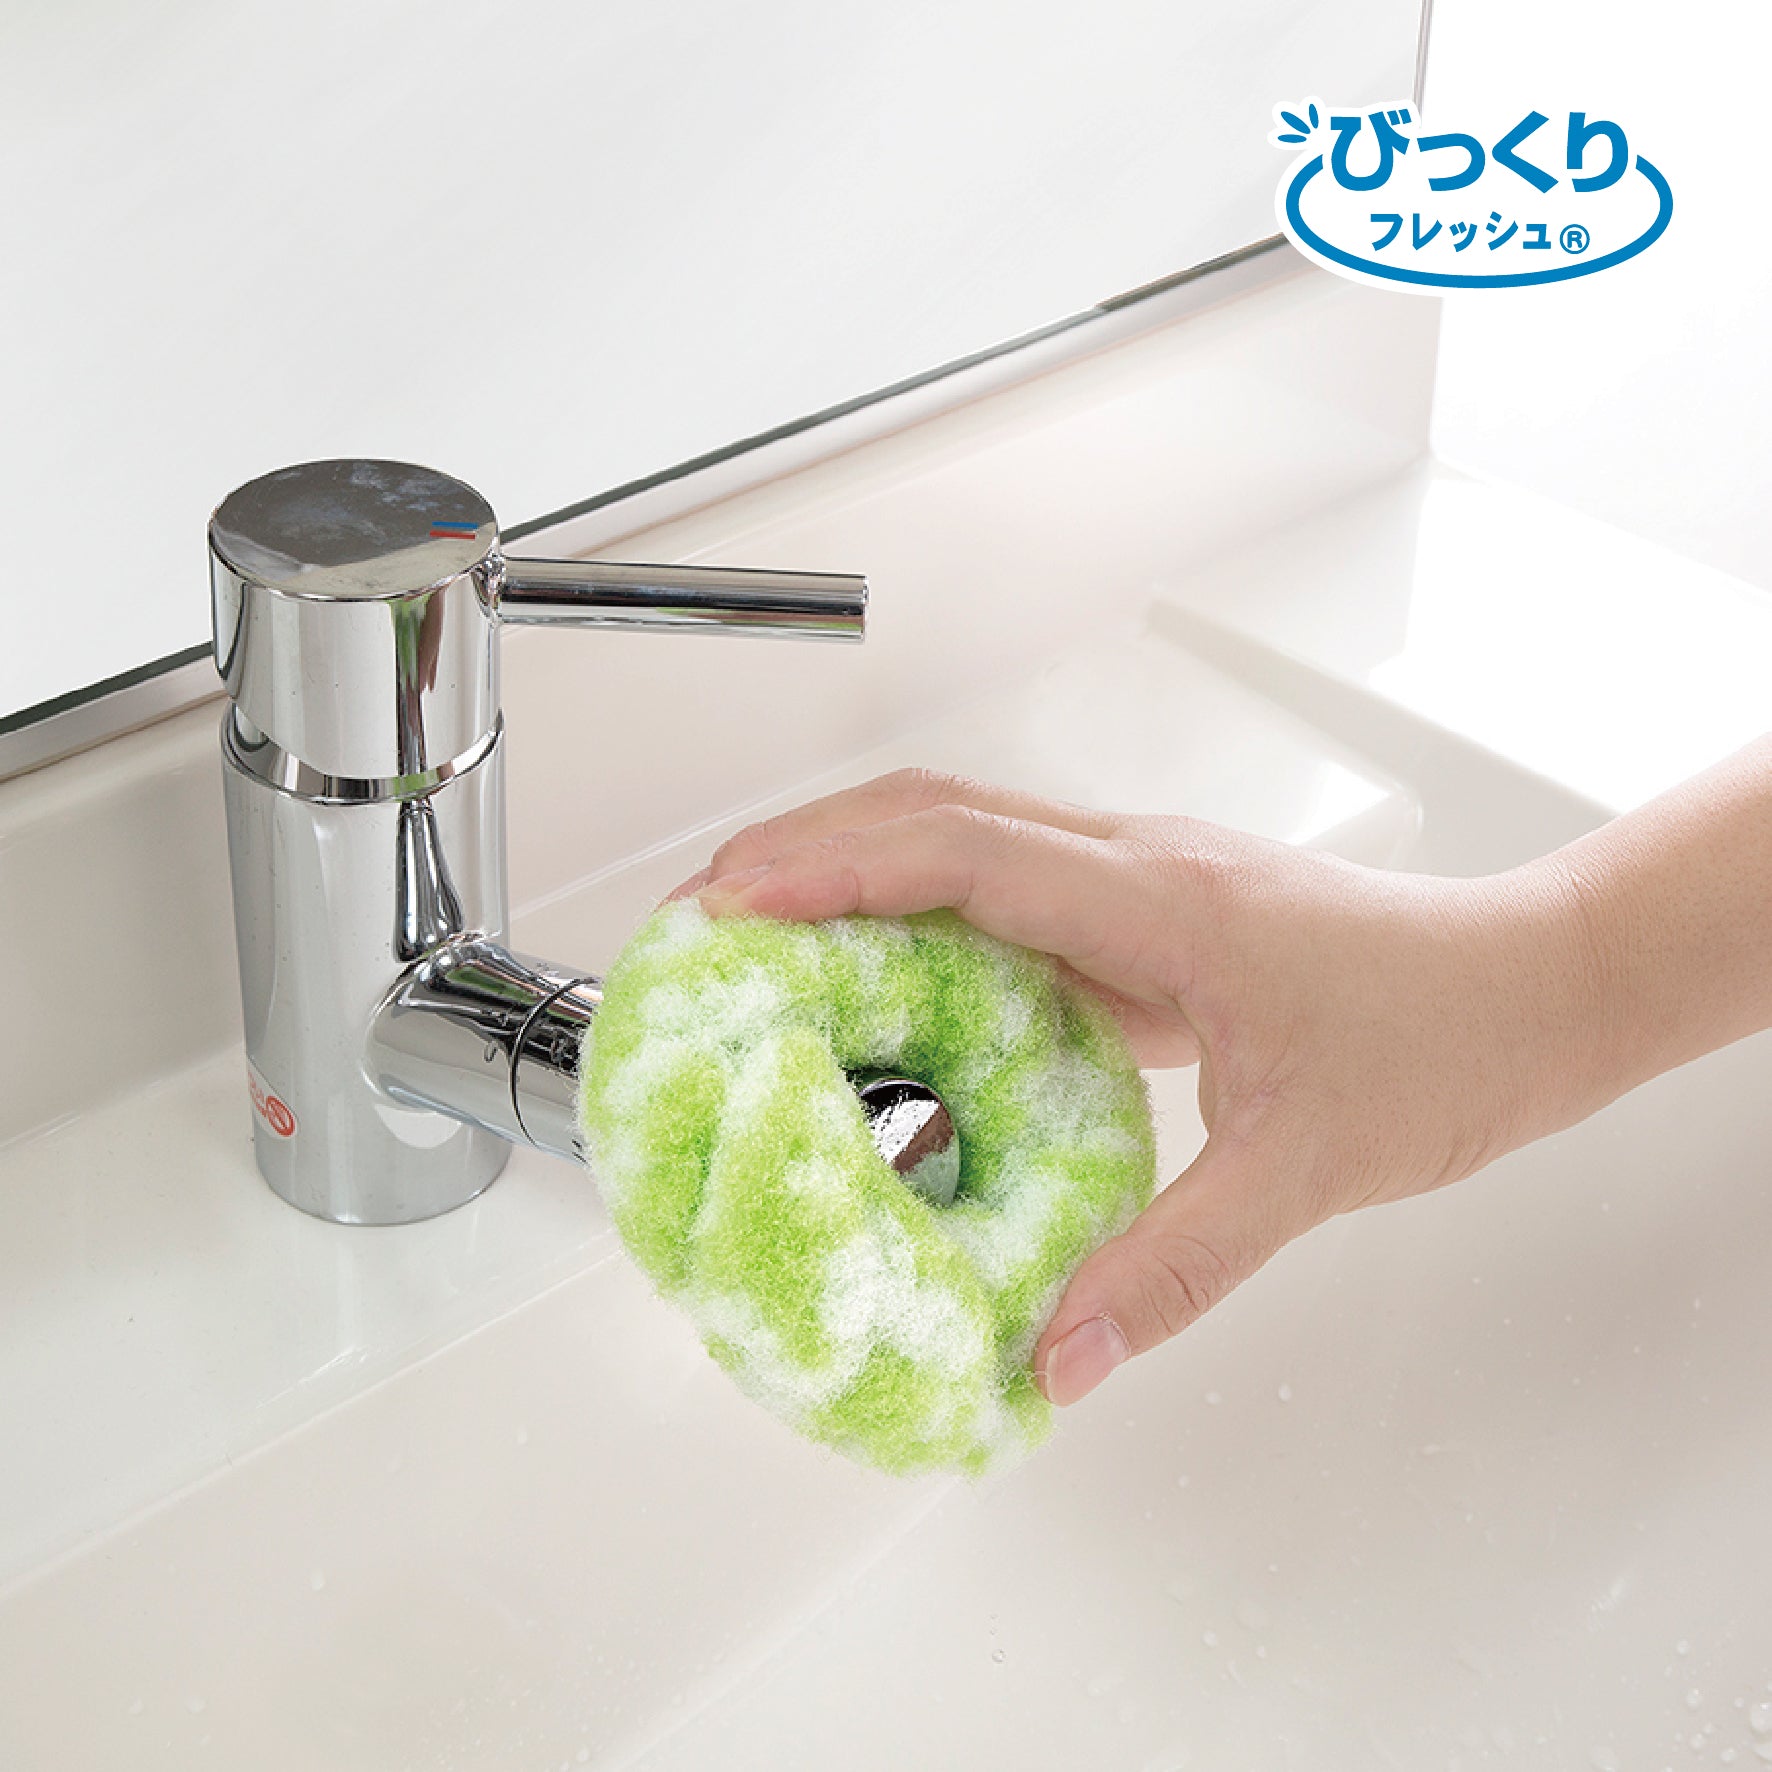 洗面所 掃除 スポンジ 排水口 おすすめ びっくりドーナツクリーナー